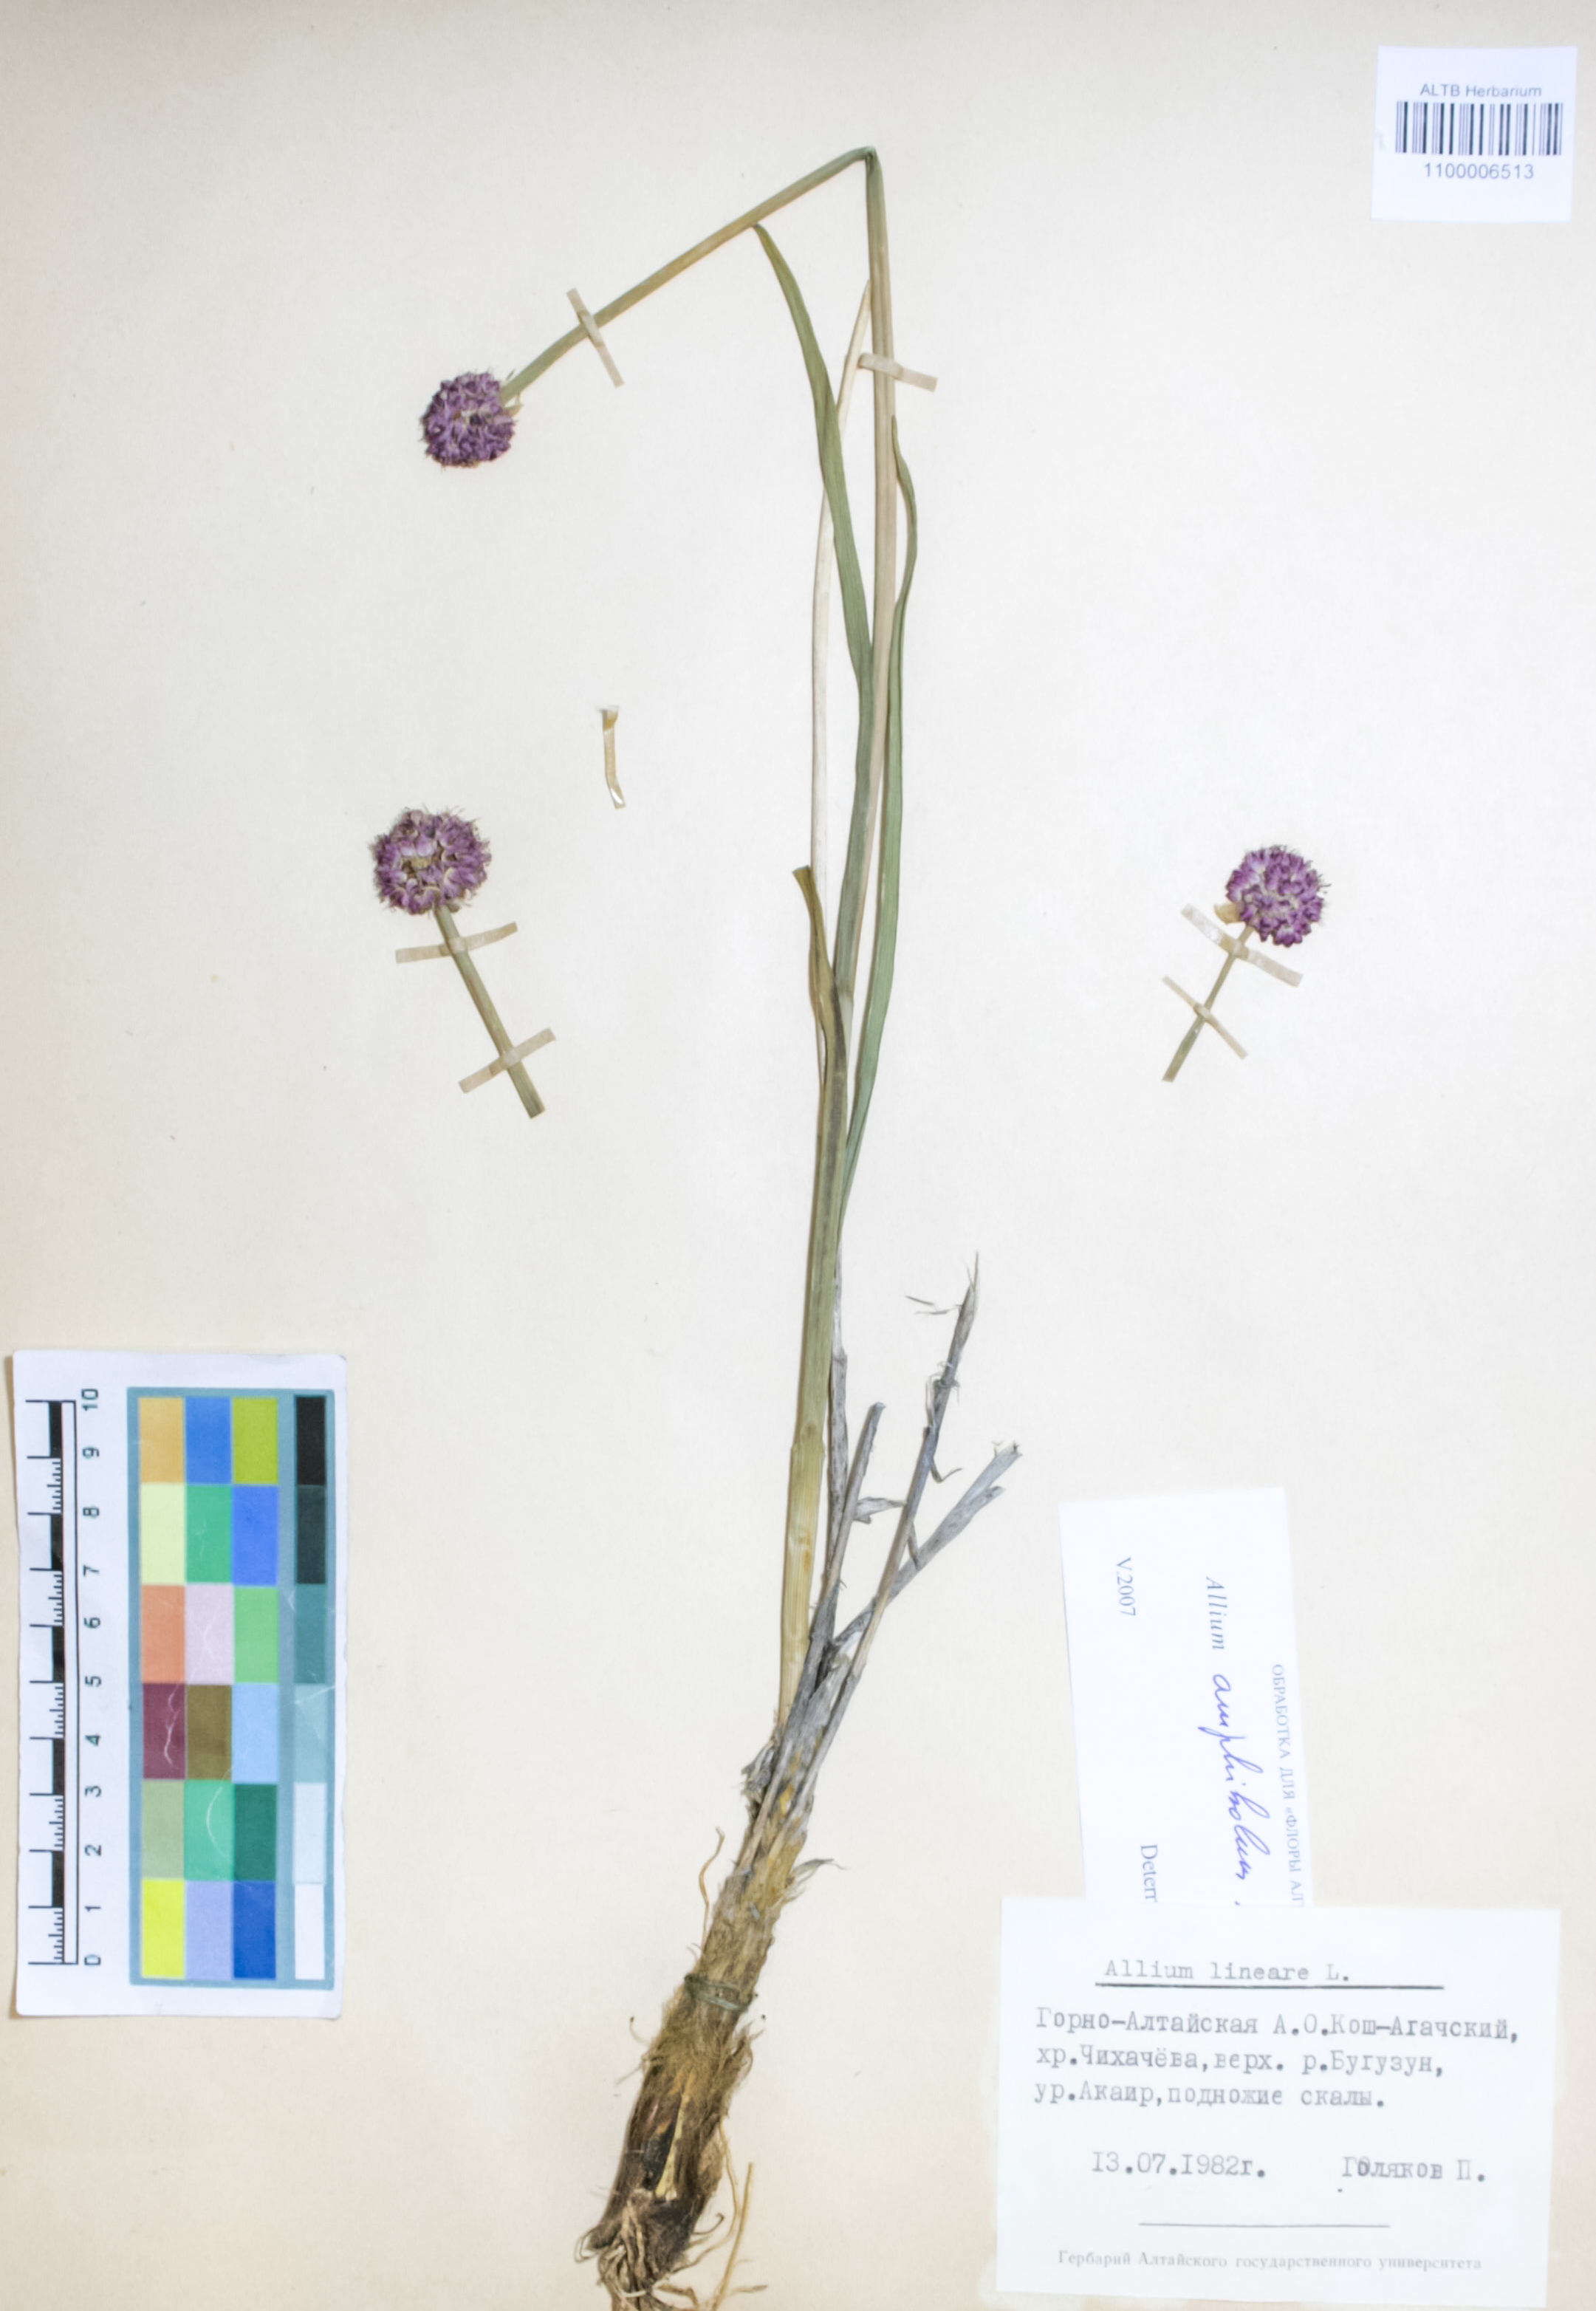 Amaryllidaceae,Allium lineare L.